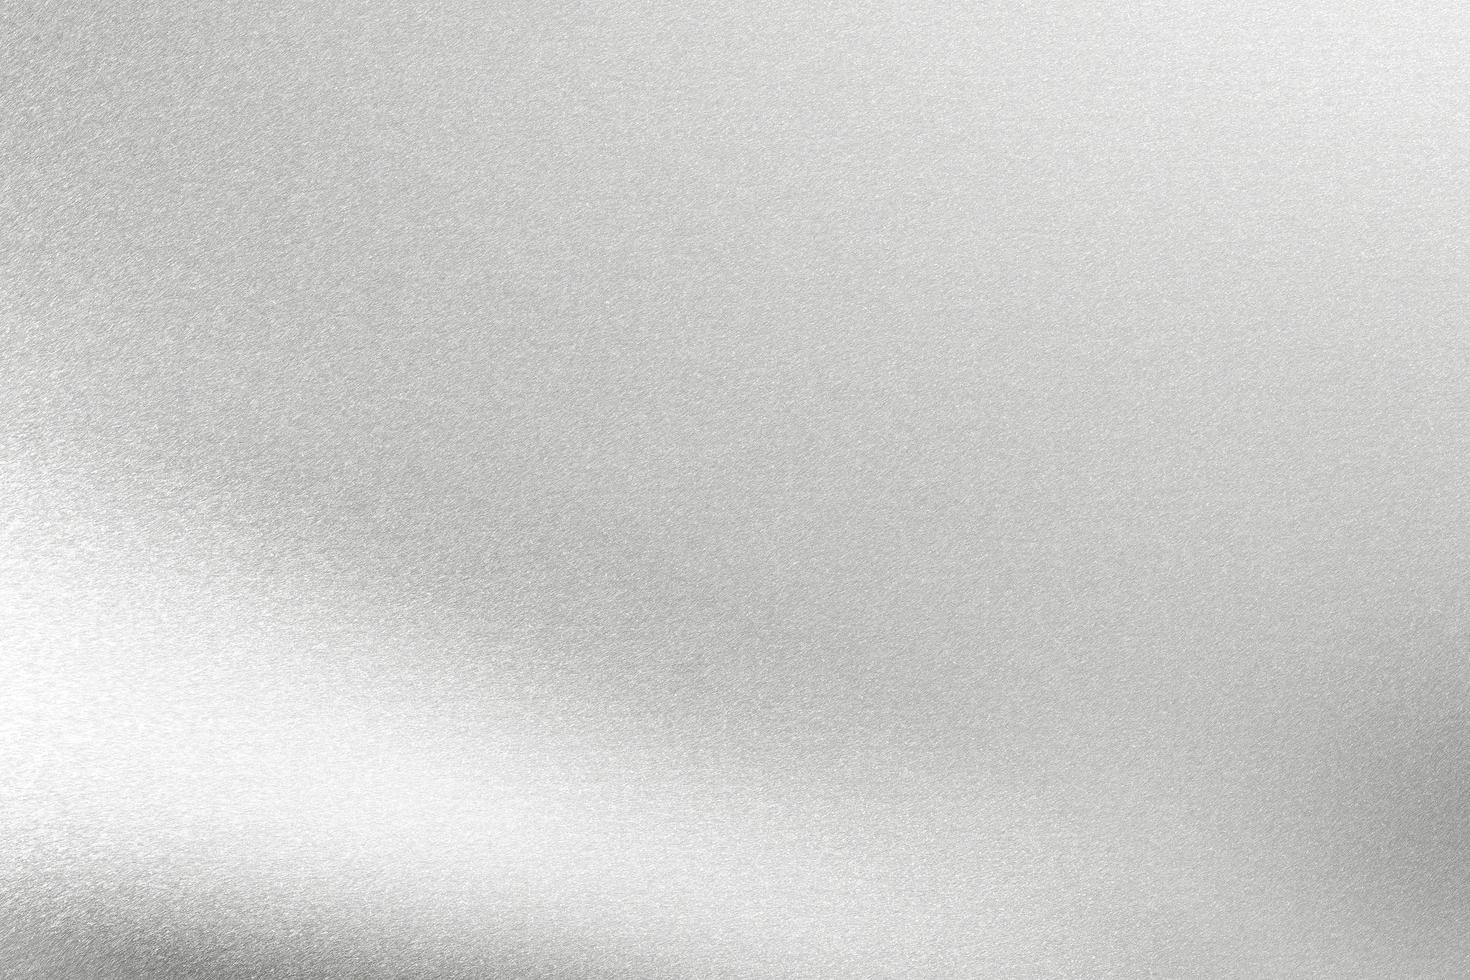 lumière qui brille sur une feuille métallique argentée, fond de texture abstraite photo